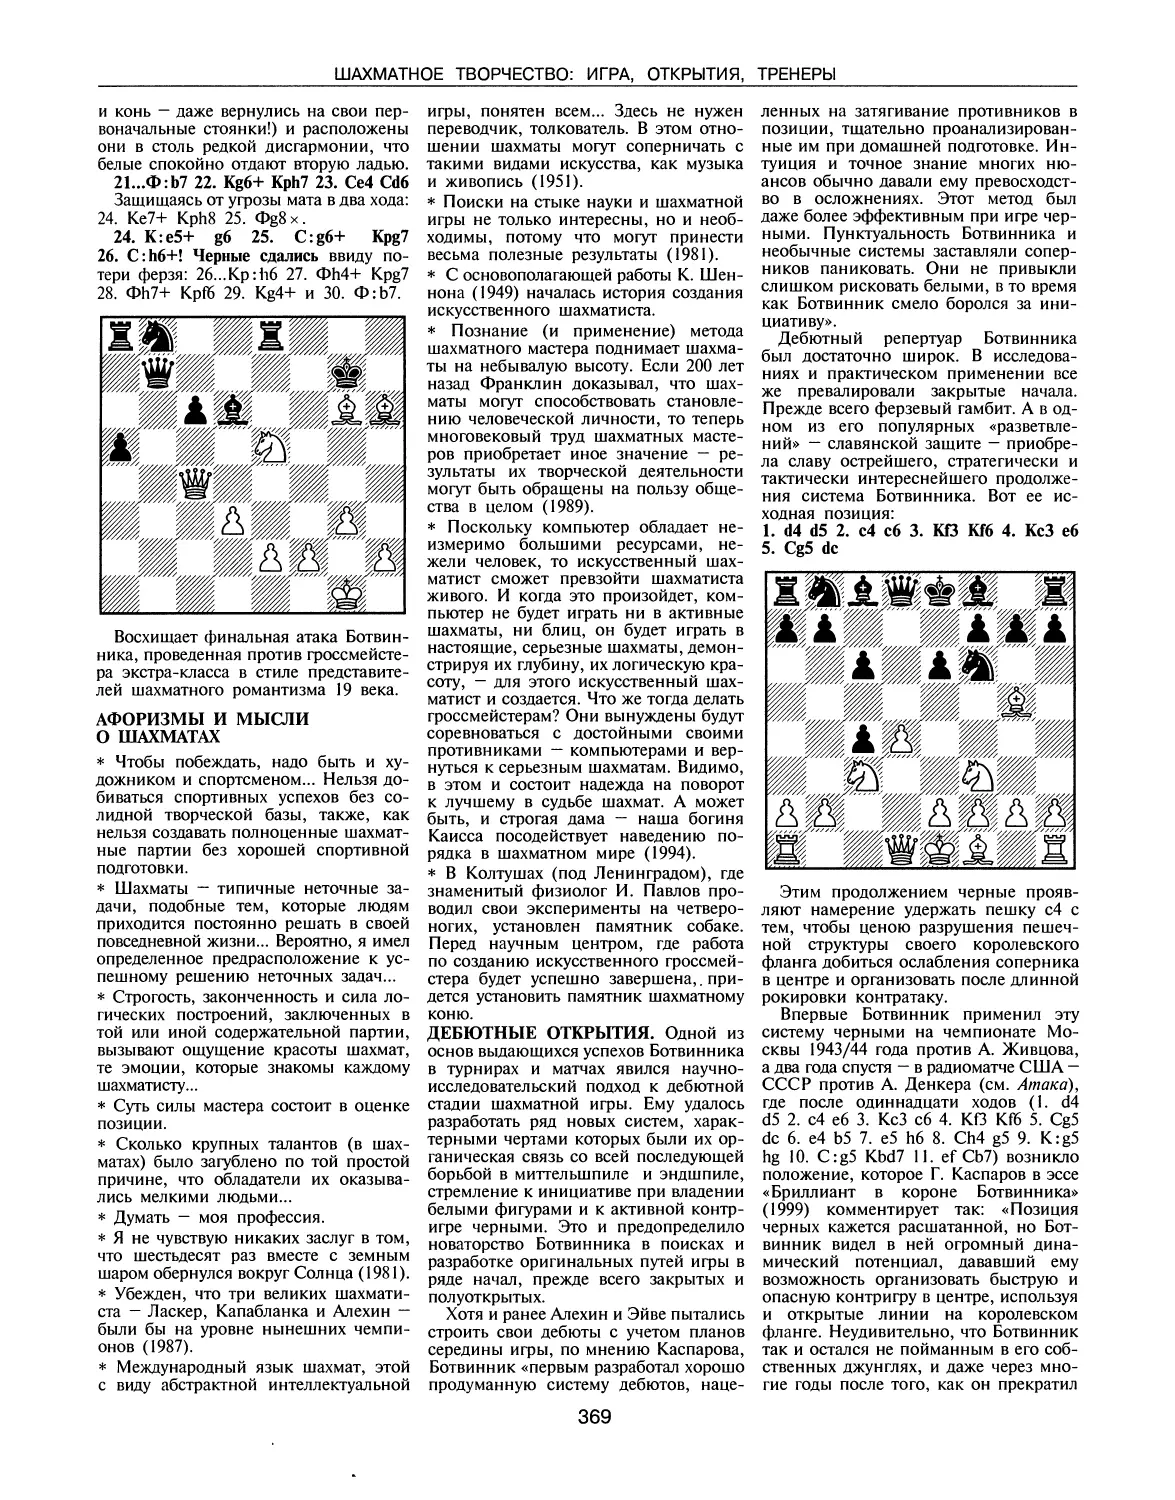 Афоризмы и мысли о шахматах
Дебютные открытия